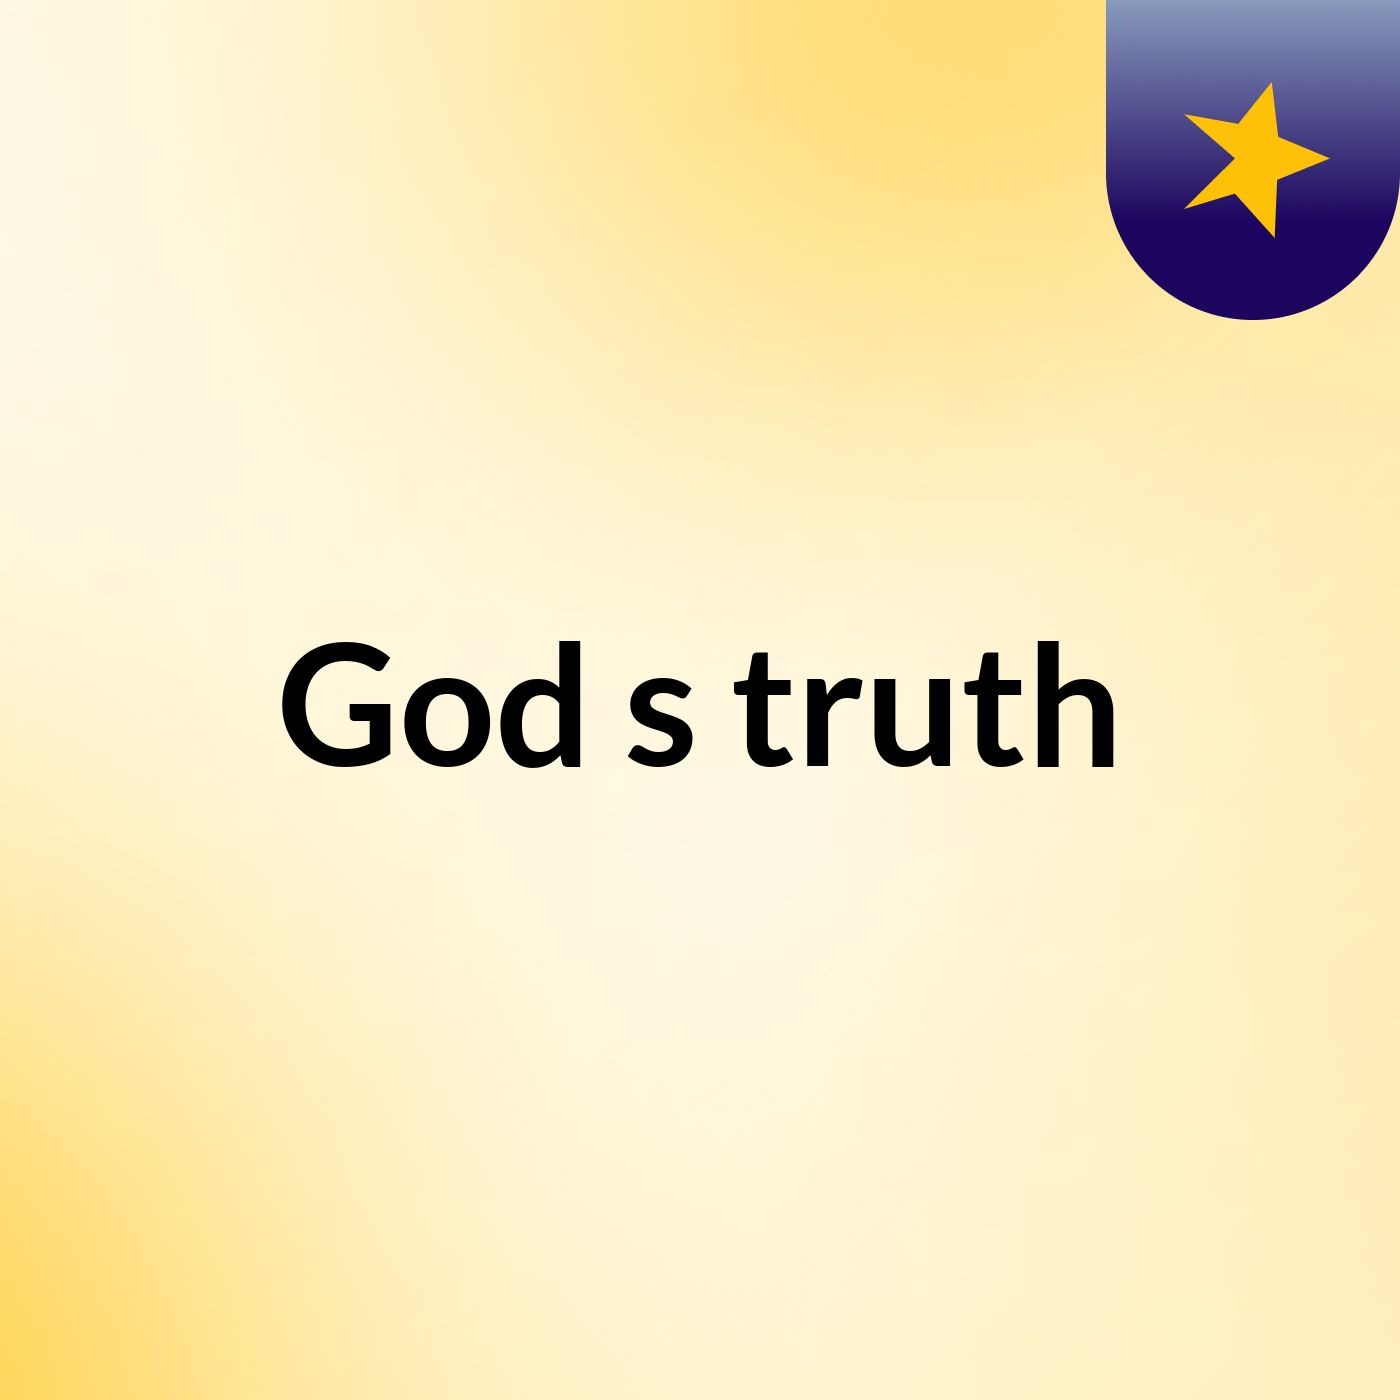 God's truth